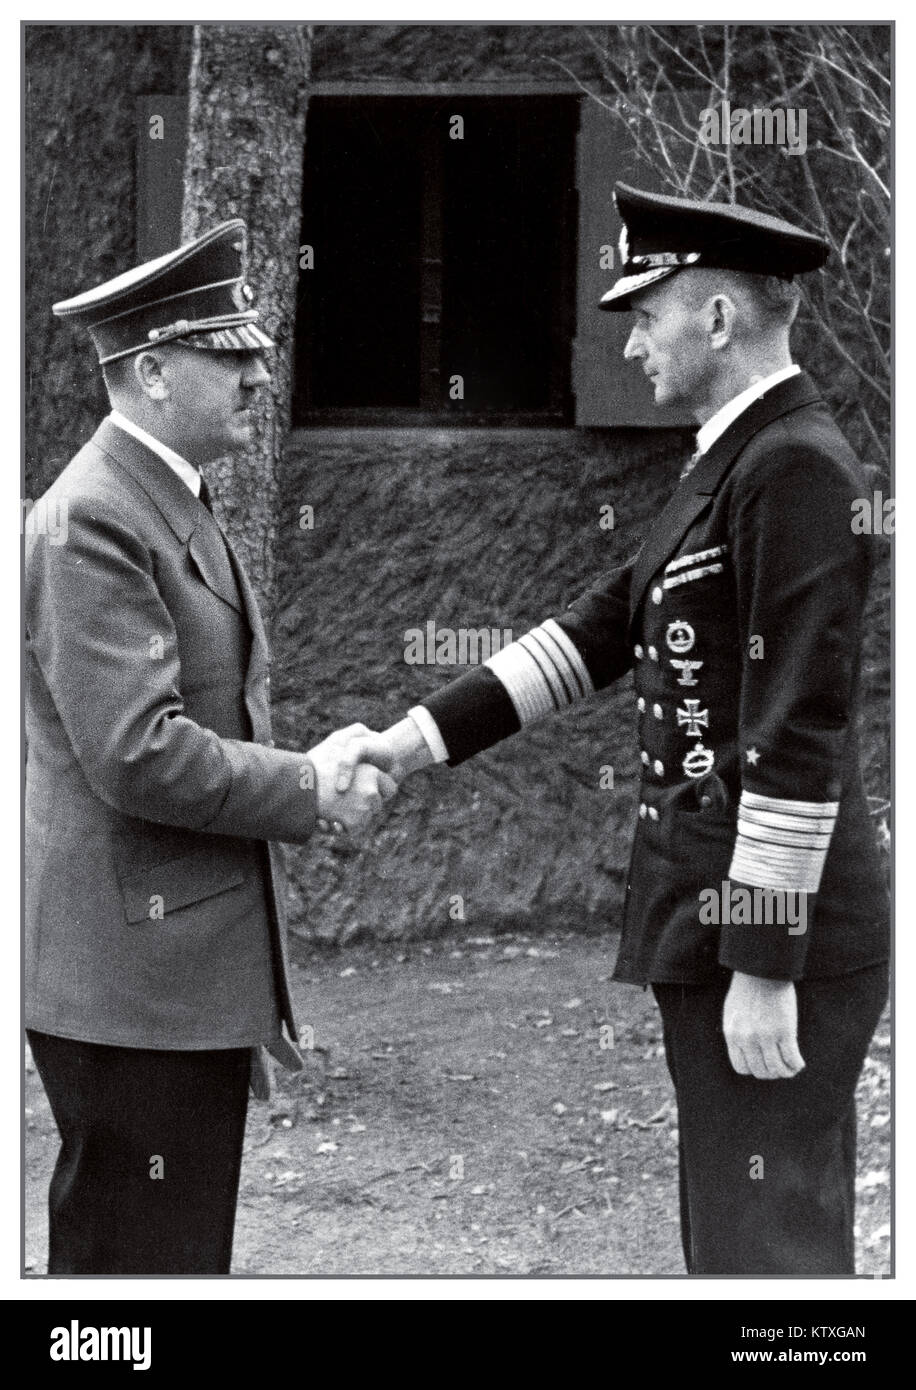 DOENITZ HITLER WW2 1940, Adolph Hitler serrant la main à l'amiral Karl Donitz, le successeur d'Hitler et commandant suprême de Reichspräsident les forces armées allemandes. Arrêté puis emprisonné pour crimes de guerre par les forces alliées après sa remise, Dönitz a été publié le 01-10-1956, et a vécu le reste de sa vie dans une obscurité relative à Aumühle, correspondant à l'occasion avec des collectionneurs de l'histoire de la marine allemande, et encore à la fin d'un fanatique nazi, meurt d'une crise cardiaque la veille de Noël 24-12-1980 comme le dernier officier allemand avec le grade de Grand Amiral Banque D'Images